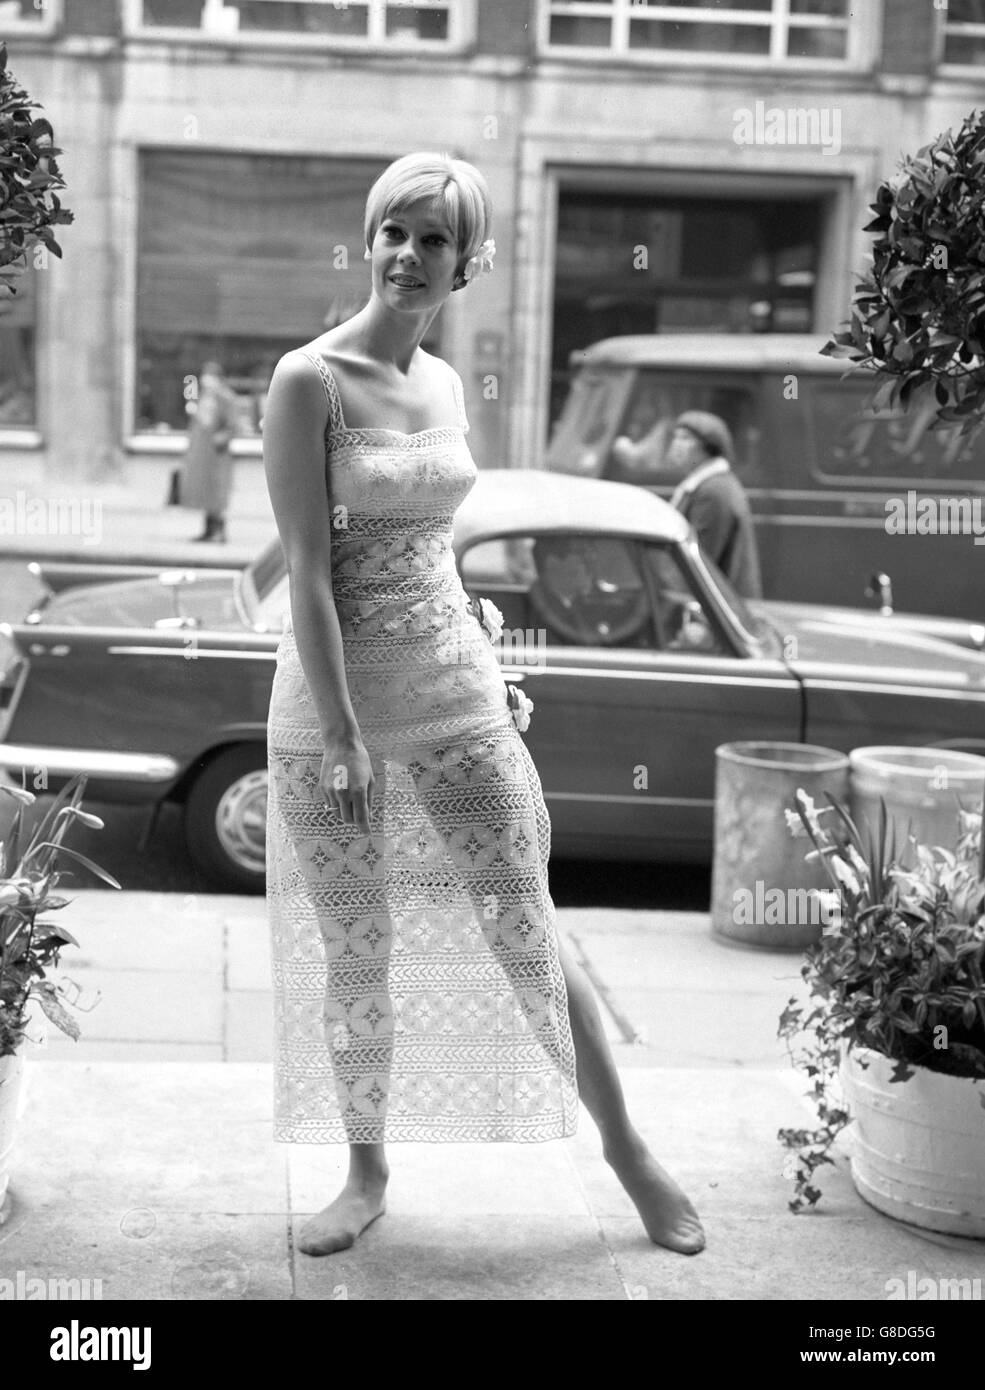 Un bikini blanc est porté sous cette robe terrasse en dentelle, qui fait partie de la collection de mode Christian Dior-London pour le printemps 1966. Banque D'Images